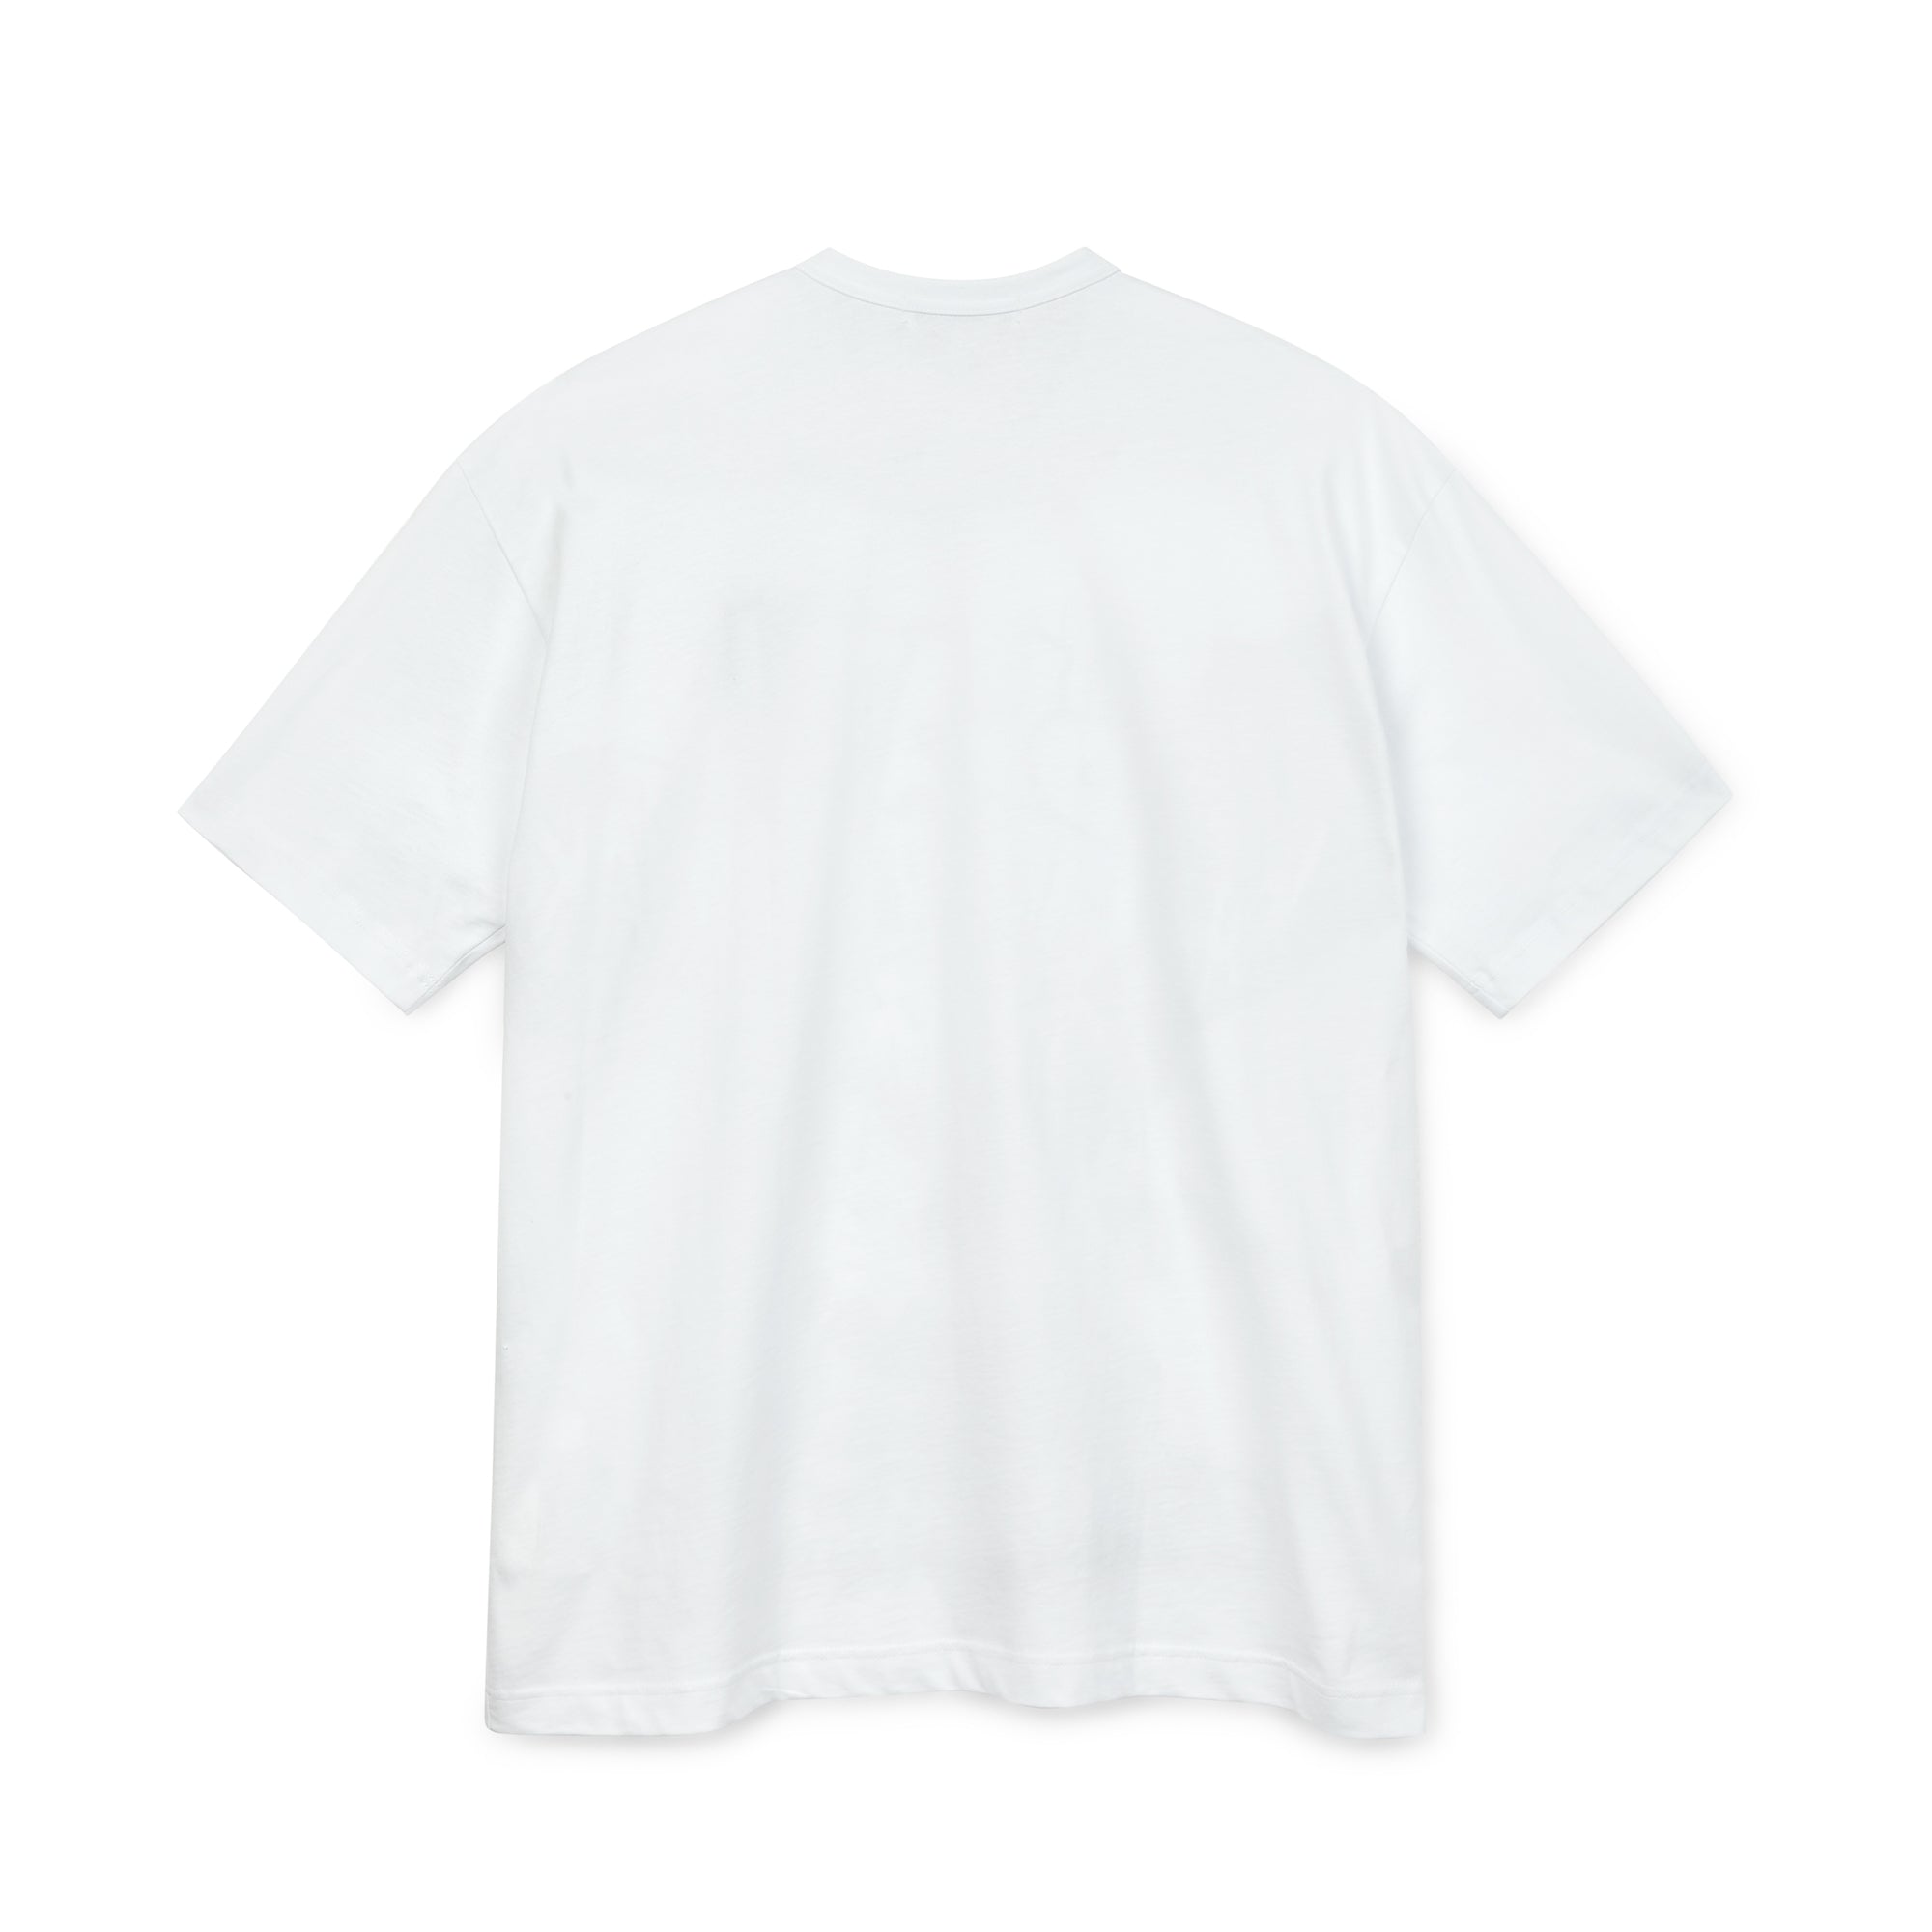 CHRISTIAN MARCLAY X CDG SHIRT SPLAT PRINT TEE - WHITE | T-Shirts